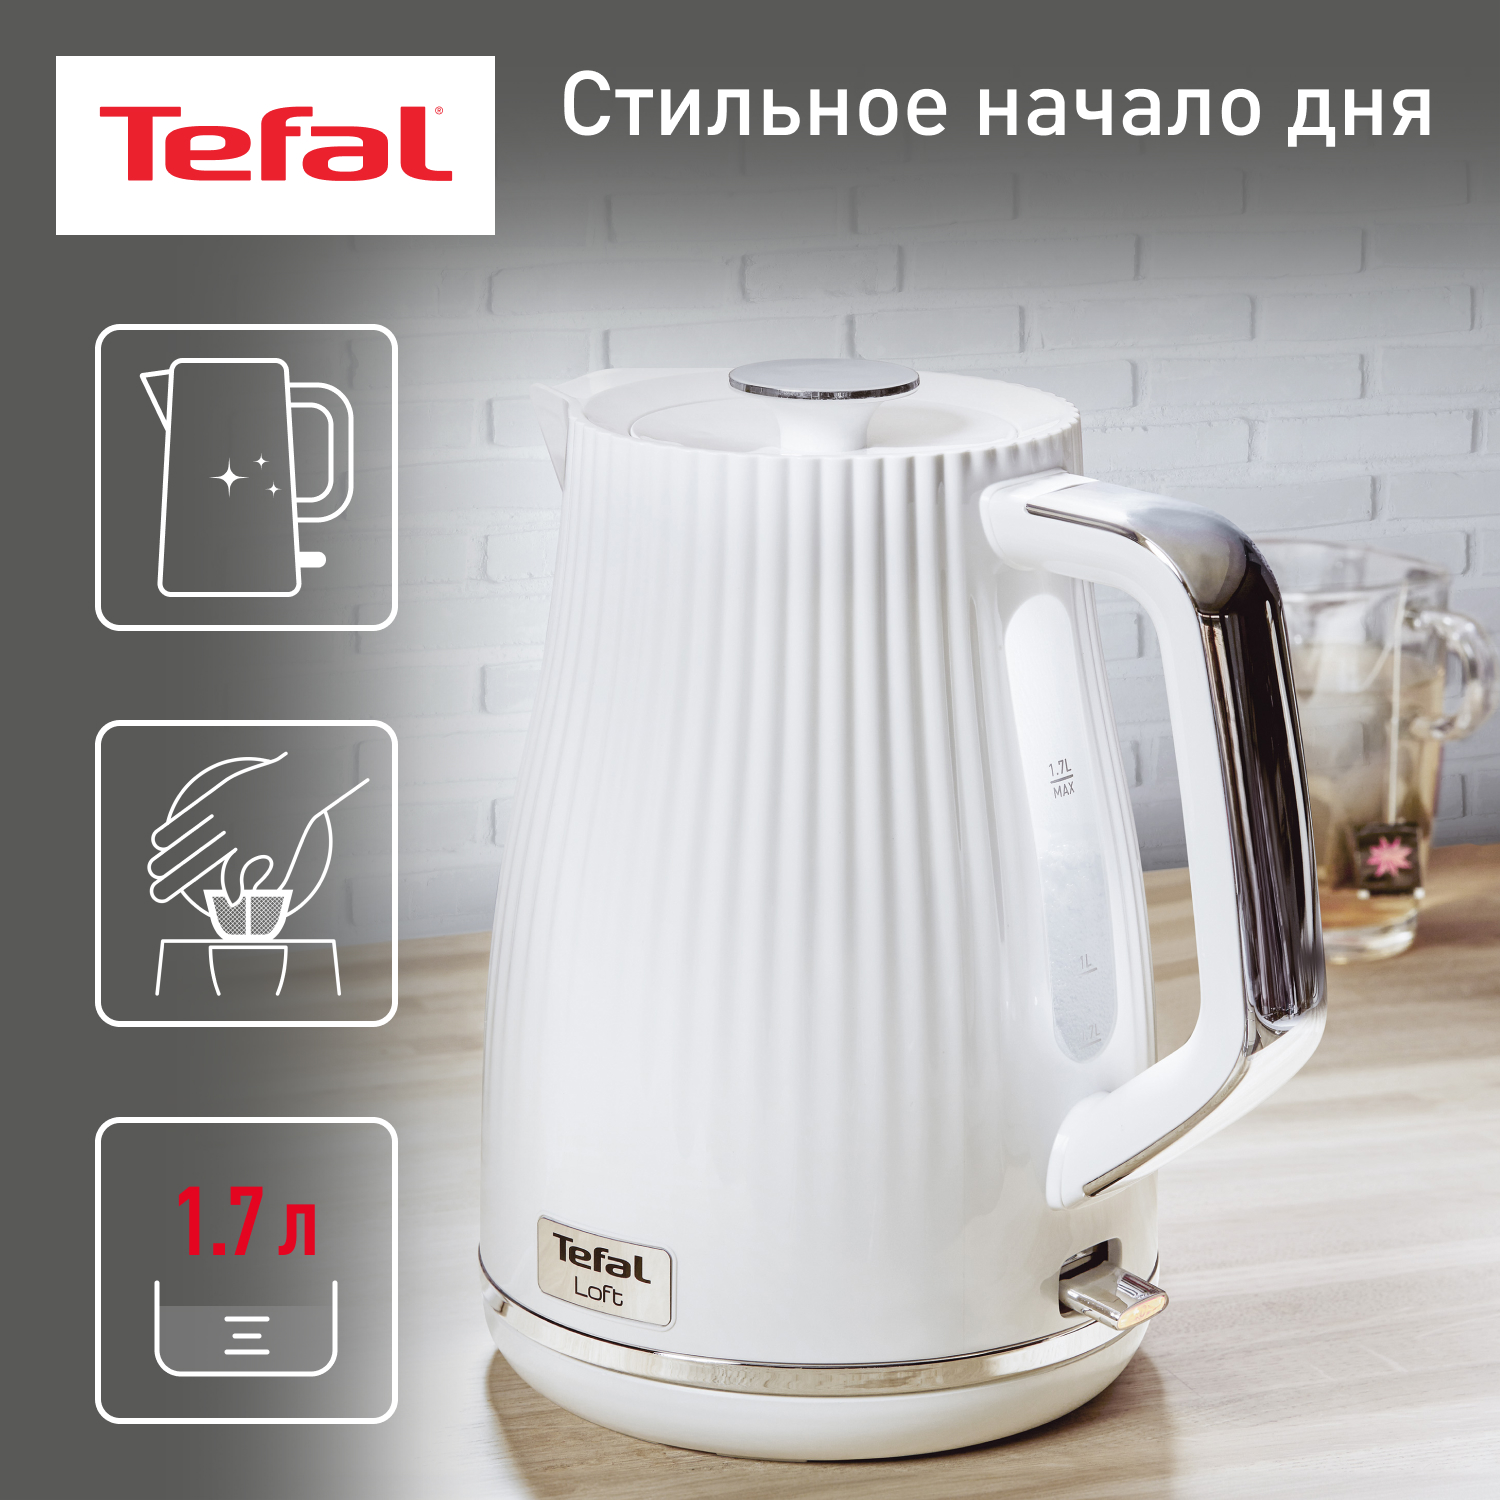 Чайник электрический Tefal KO250130 1.7 л белый, купить в Москве, цены в интернет-магазинах на Мегамаркет